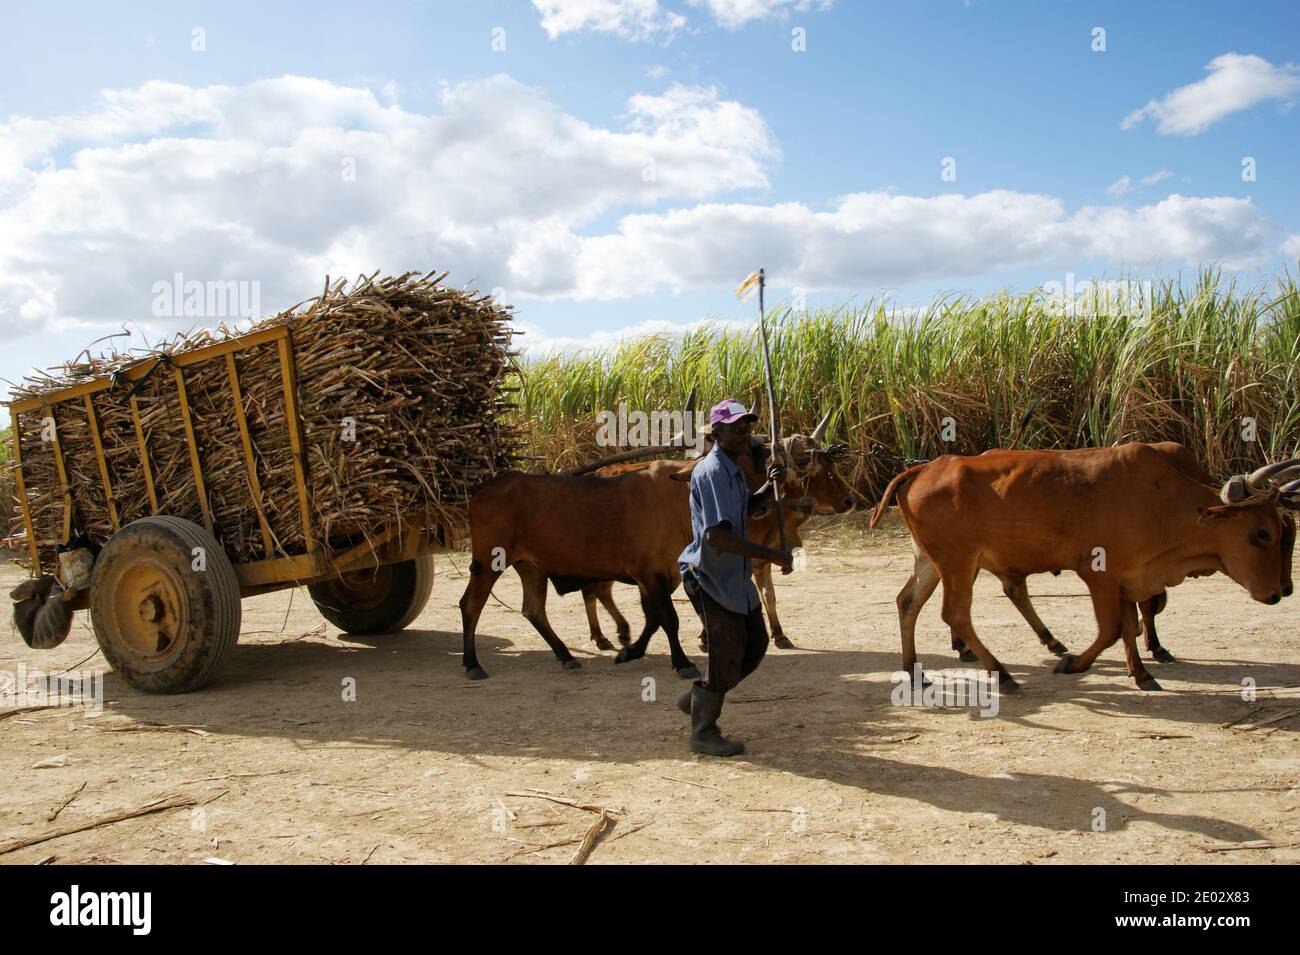 Un campesino está transportando caña de azúcar en un carro dibujado por bueyes para los trabajadores. Bayahibe, la Romana, República Dominicana Foto de stock